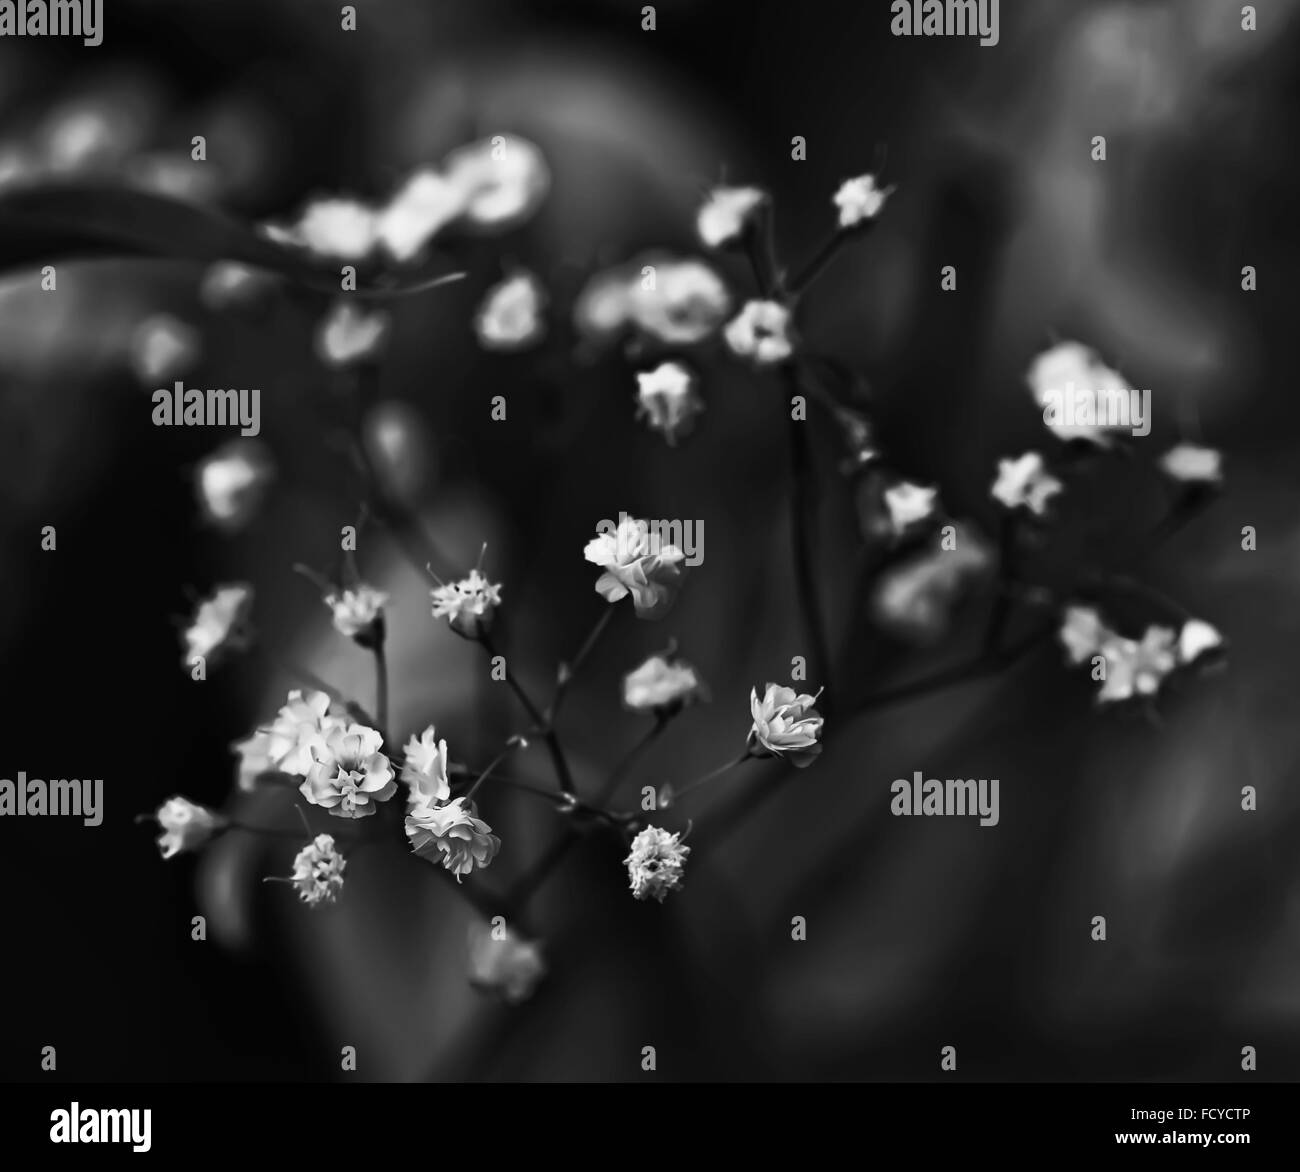 Kleine weiße schöne Blumen in schwarz / weiß Dämmerung Stockfoto